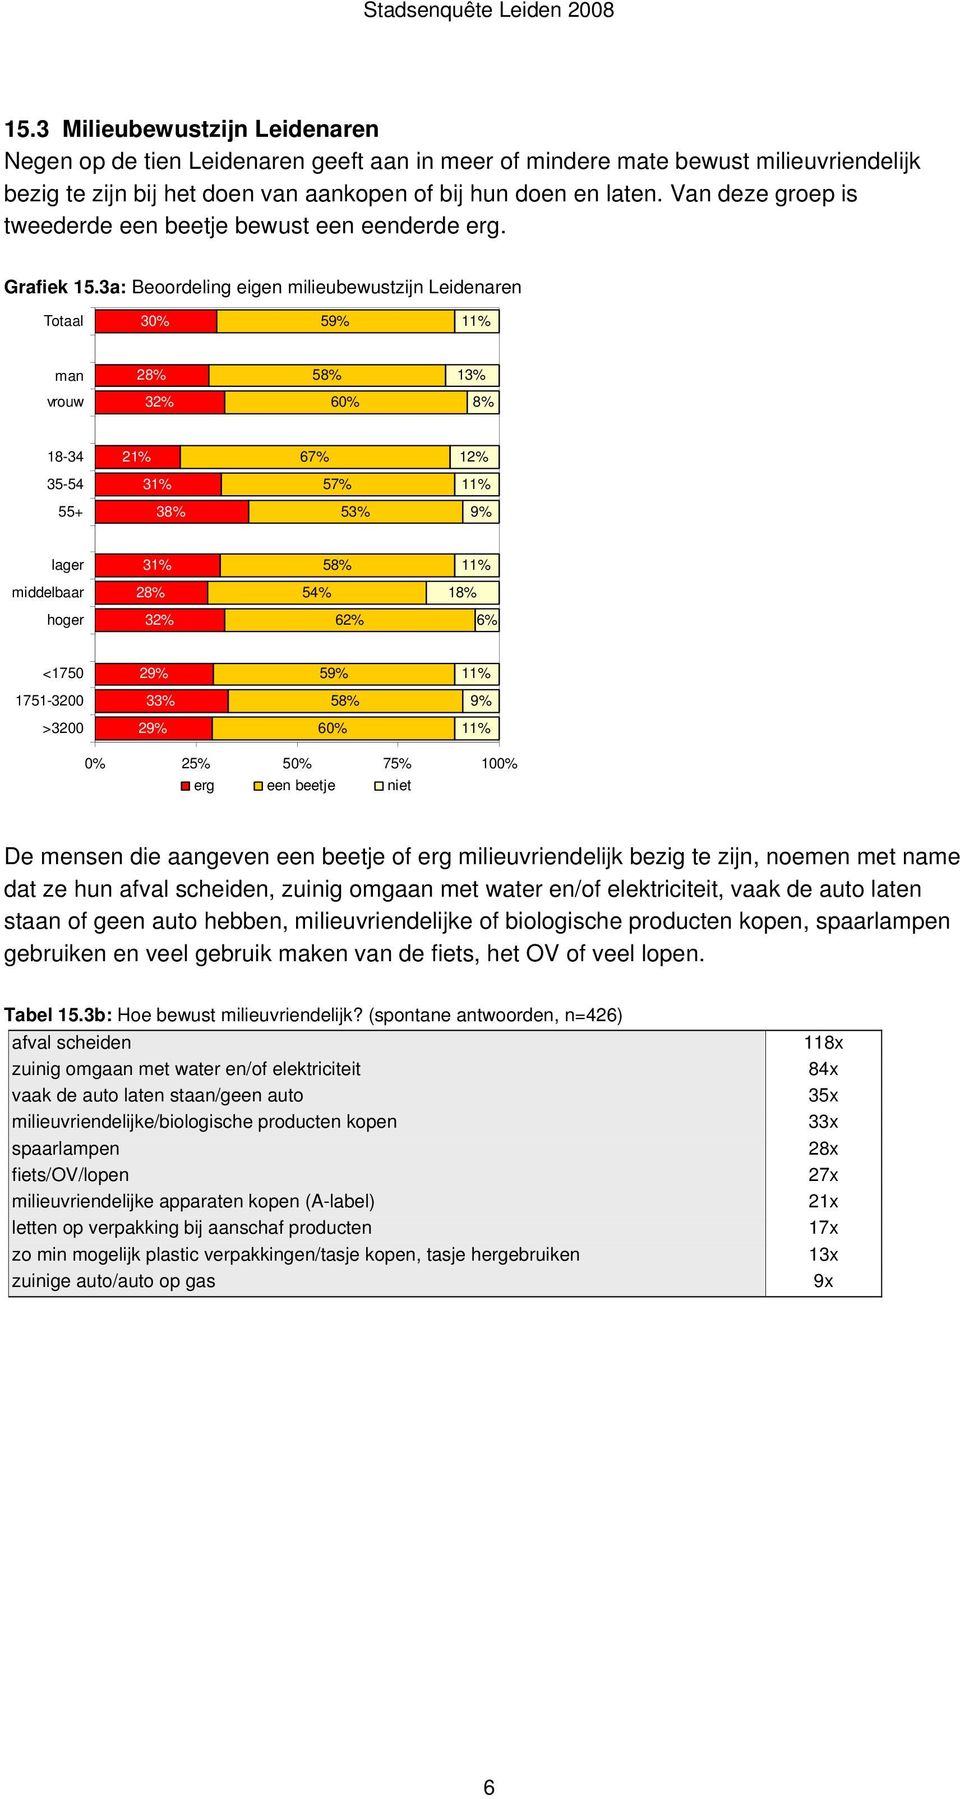 3a: Beoordeling eigen milieubewustzijn Leidenaren Totaal 30% 59% man 28% 58% 13% vrouw 32% 60% 8% 18-34 21% 67% 12% 35-54 31% 57% 55+ 38% 53% 9% lager 31% 58% middelbaar 28% 54% 18% hoger 32% 62% 6%